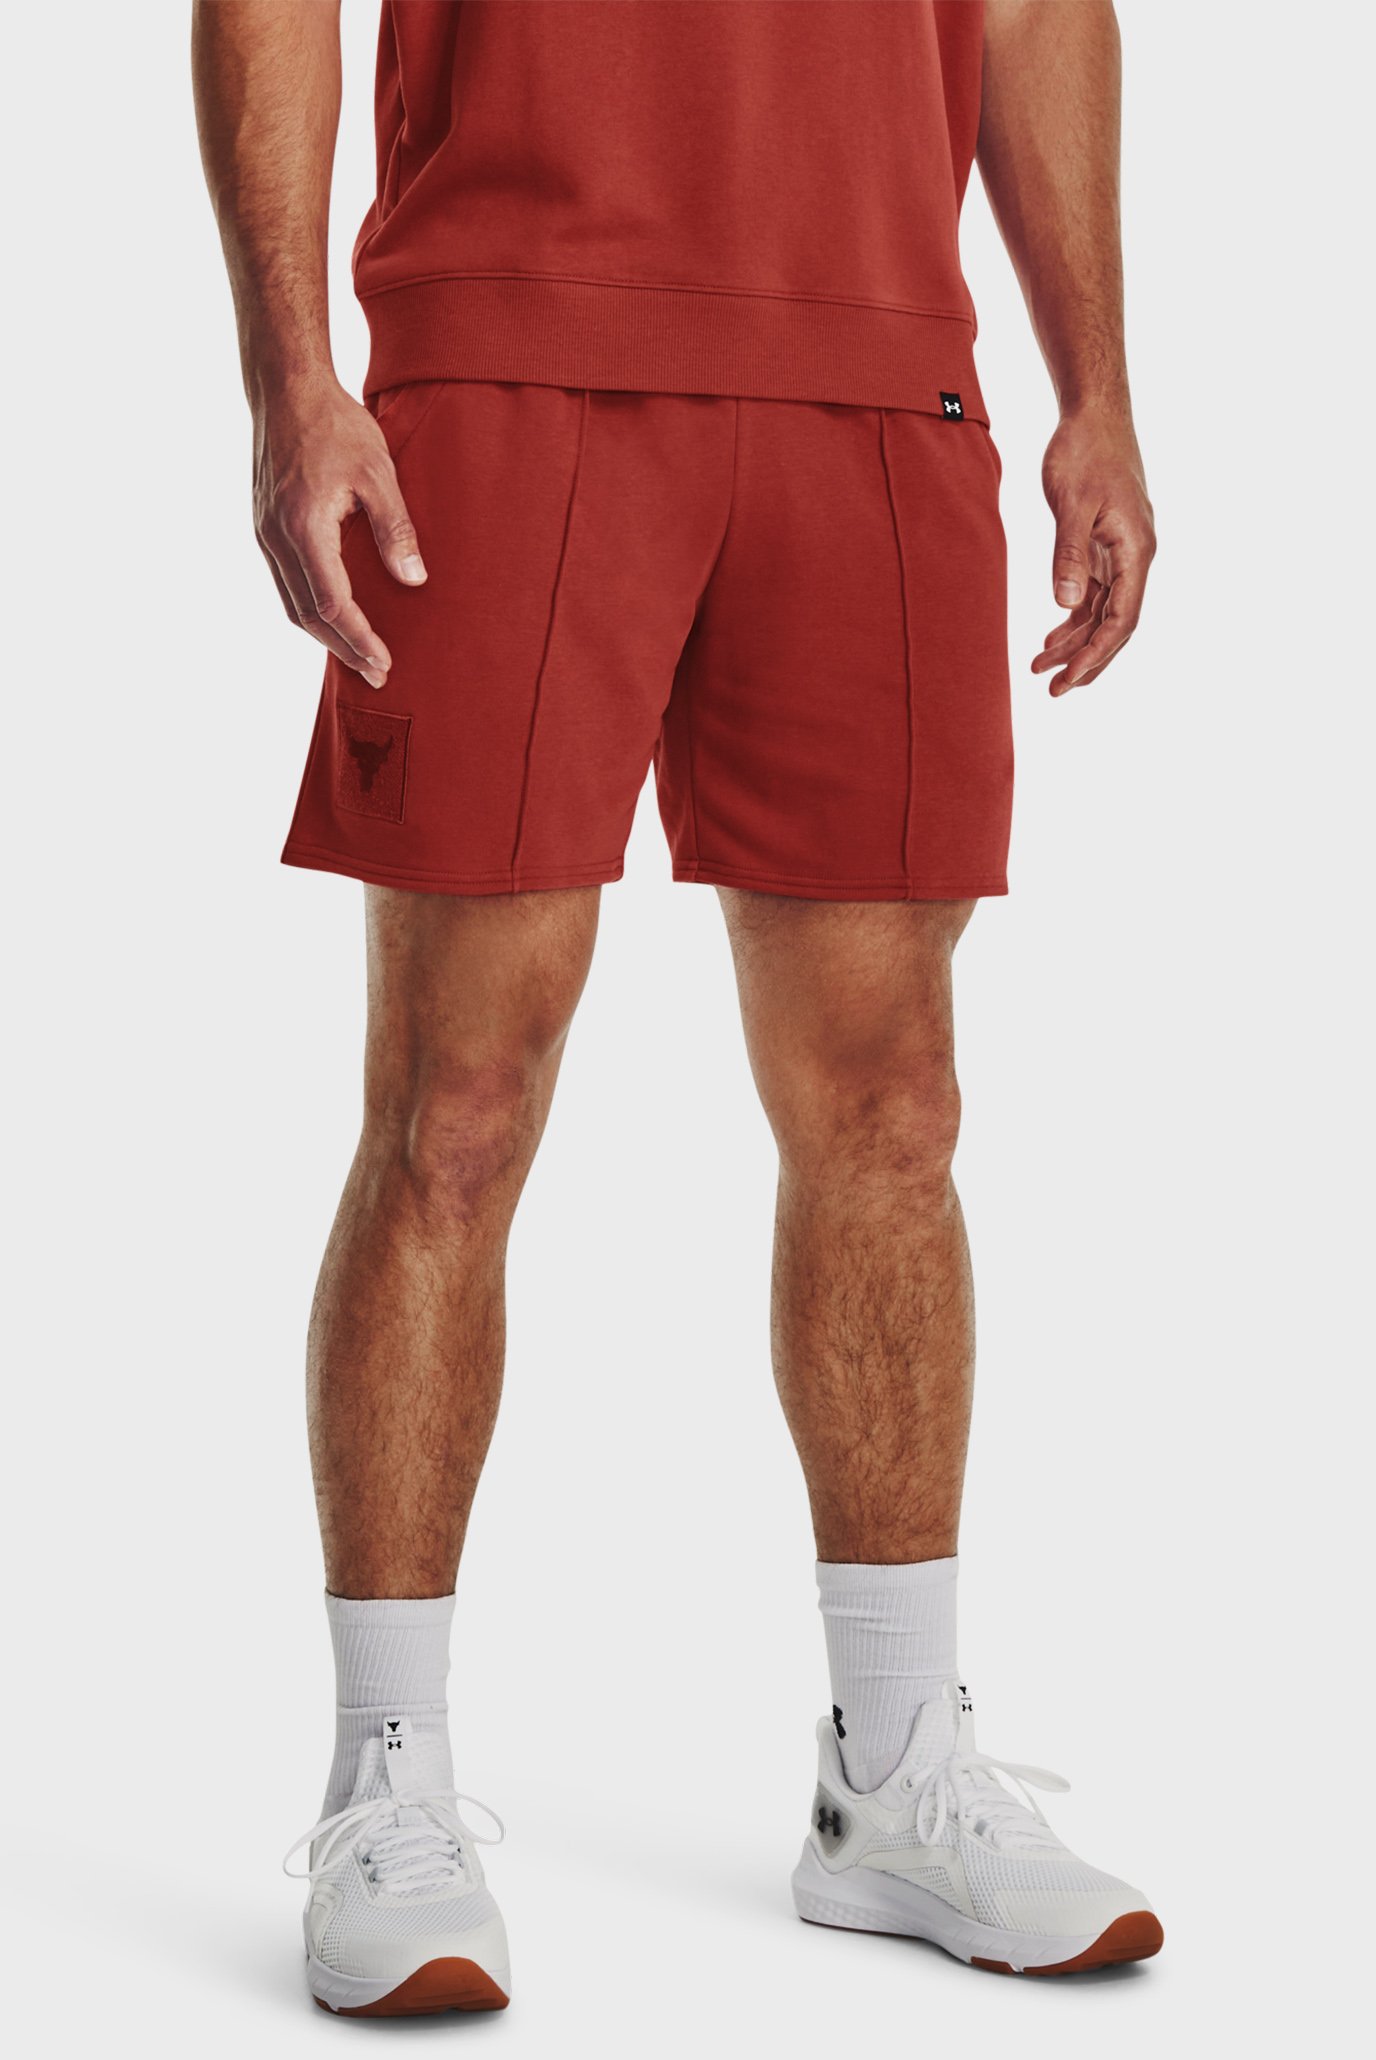 Мужские красные шорты Pjt Rock Terry Gym Short 1